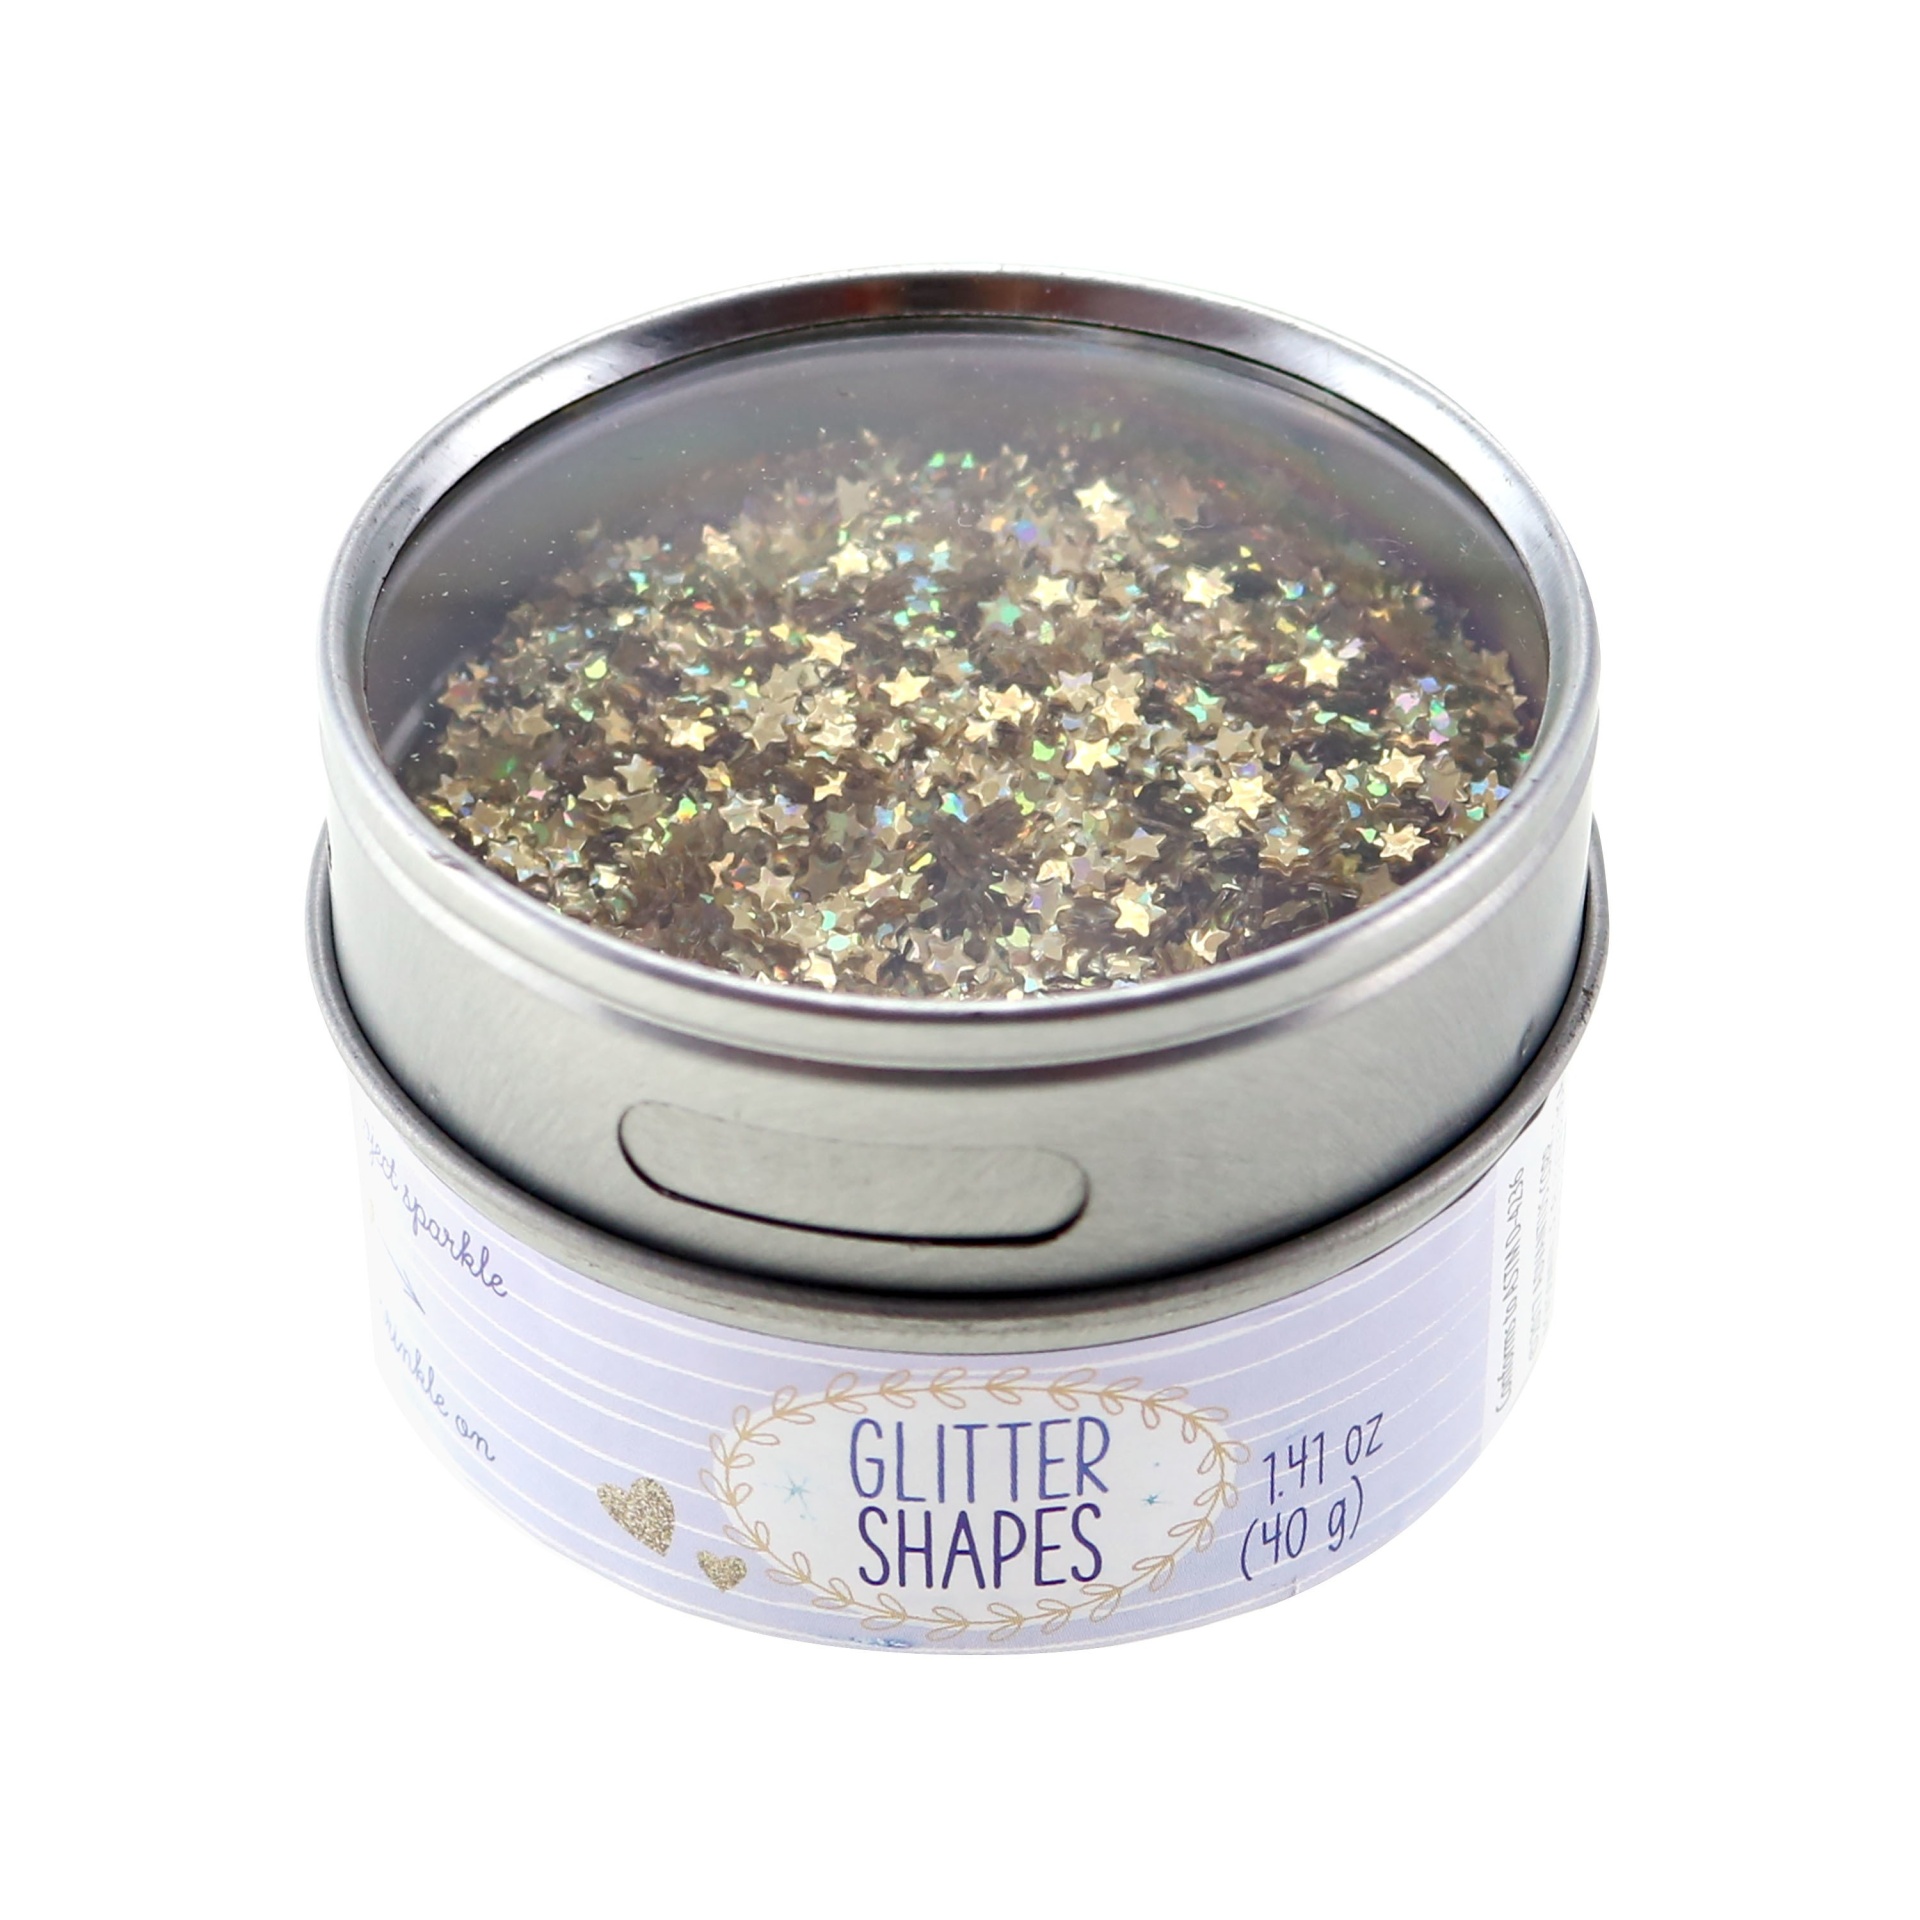 Gold Star Glitter - Sulyn 1.41 oz